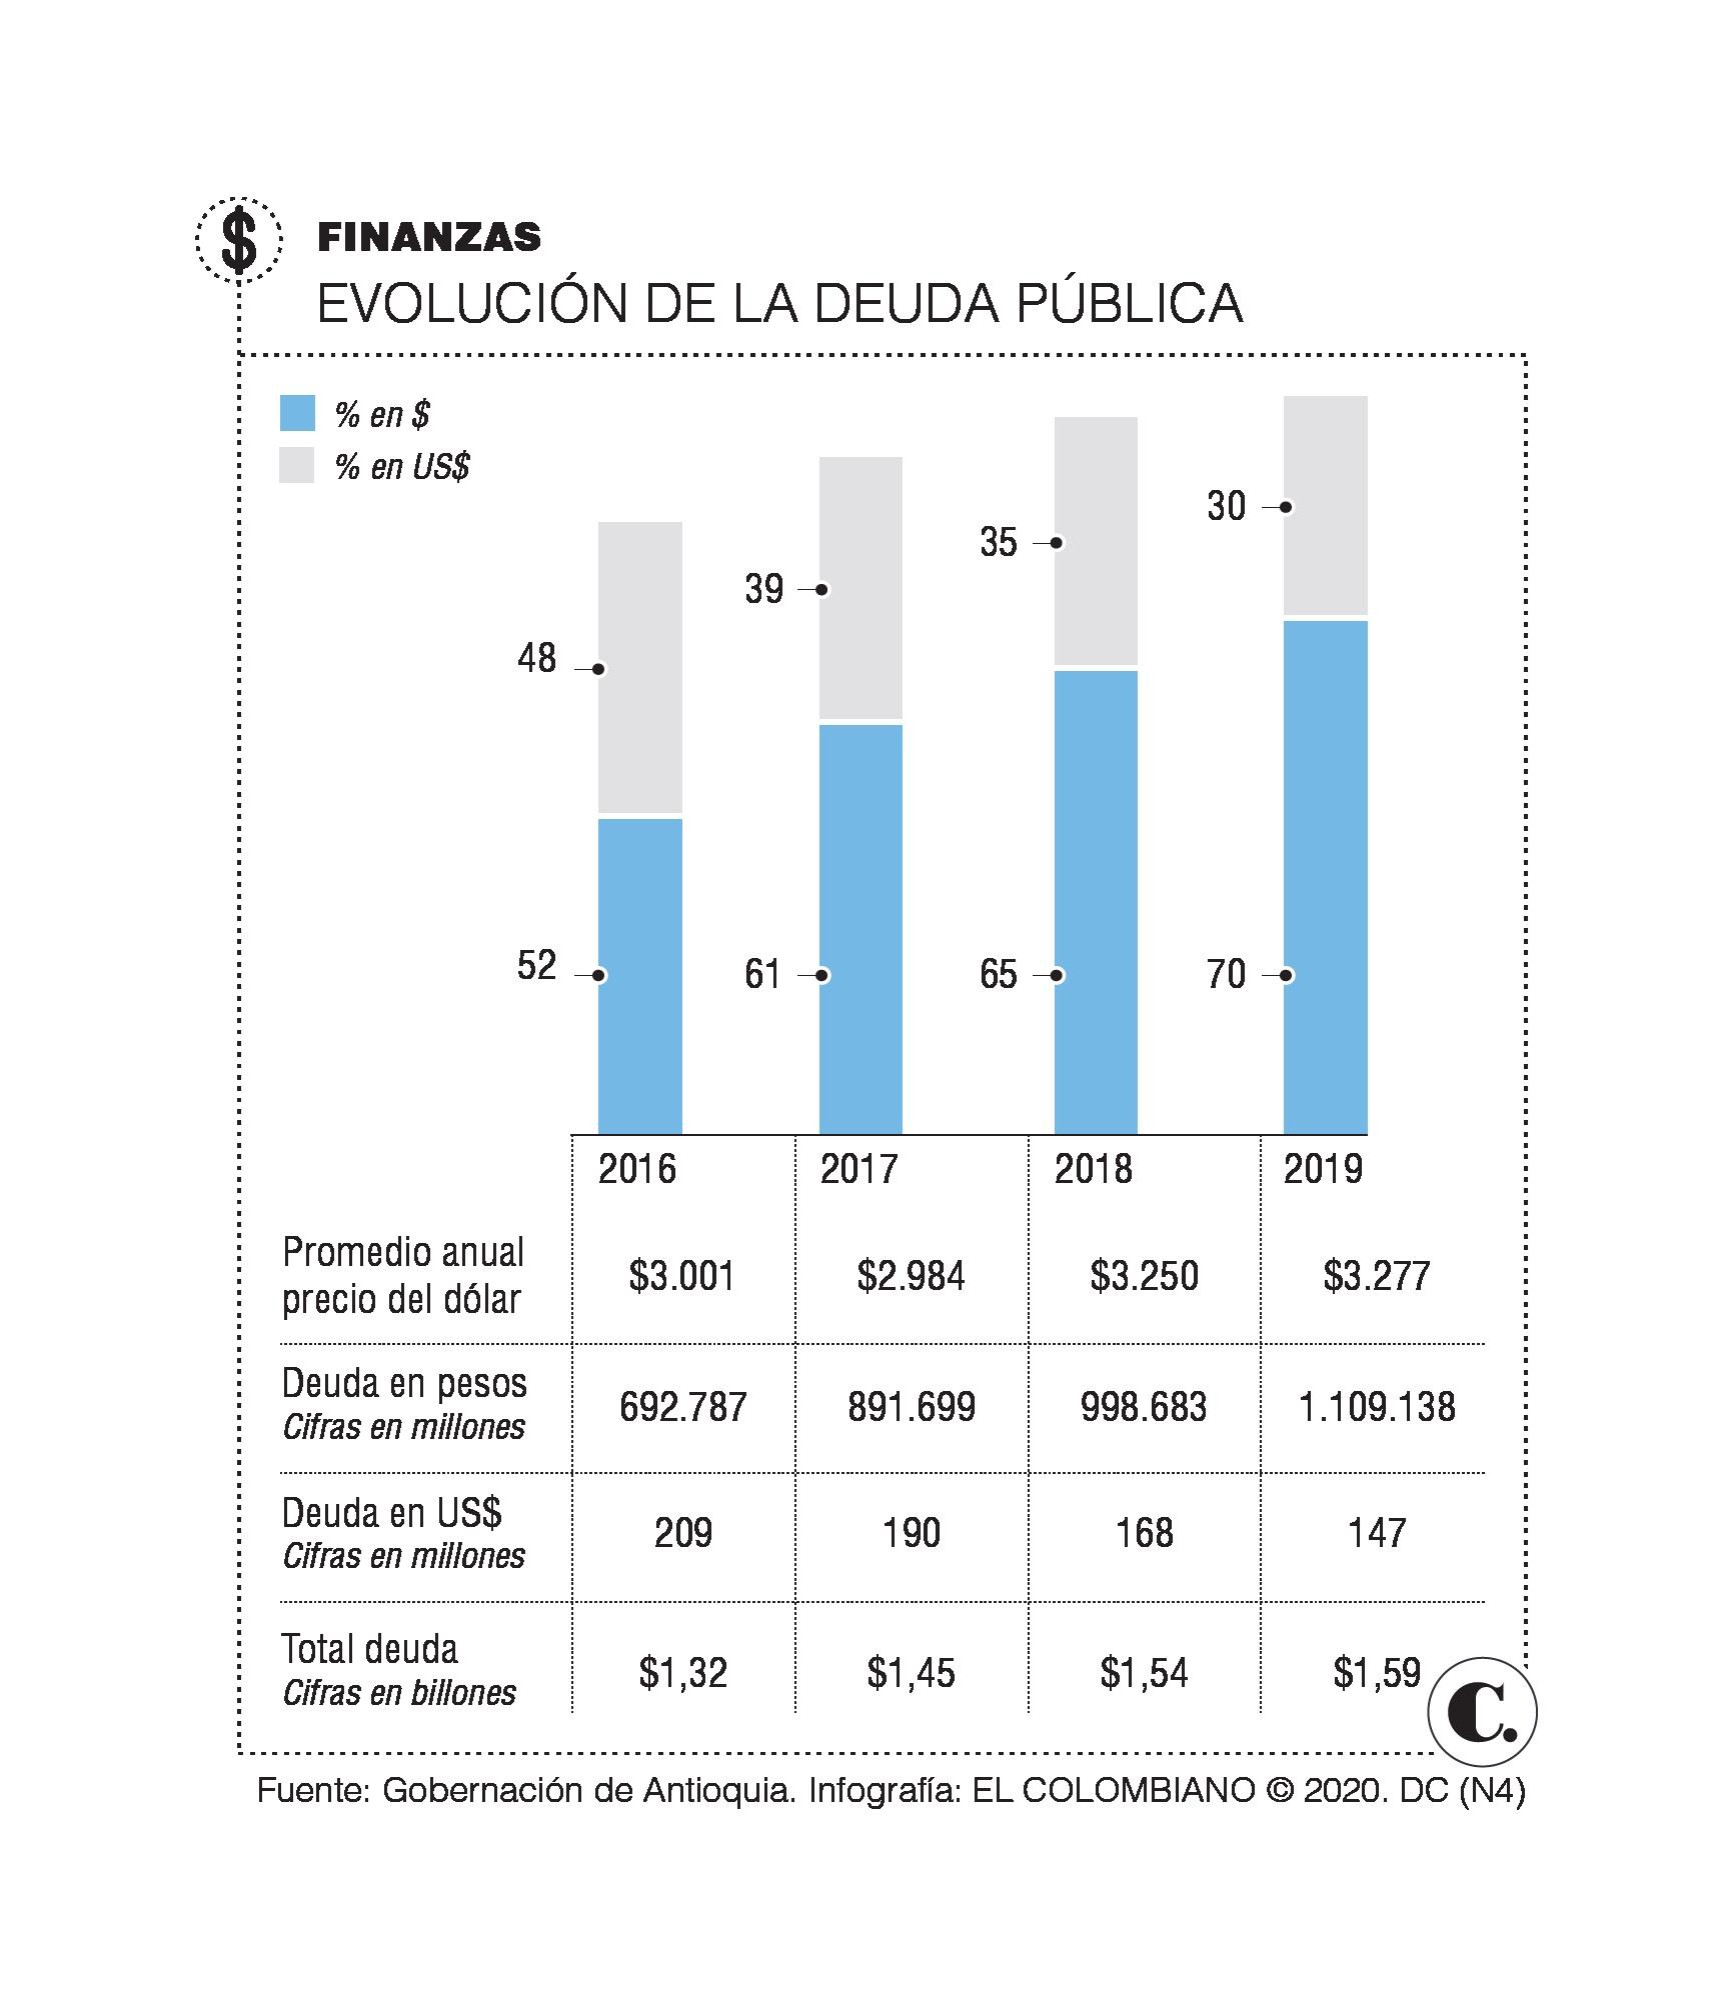 La deuda de la Gobernación de Antioquia alcanza los $1,59 billones